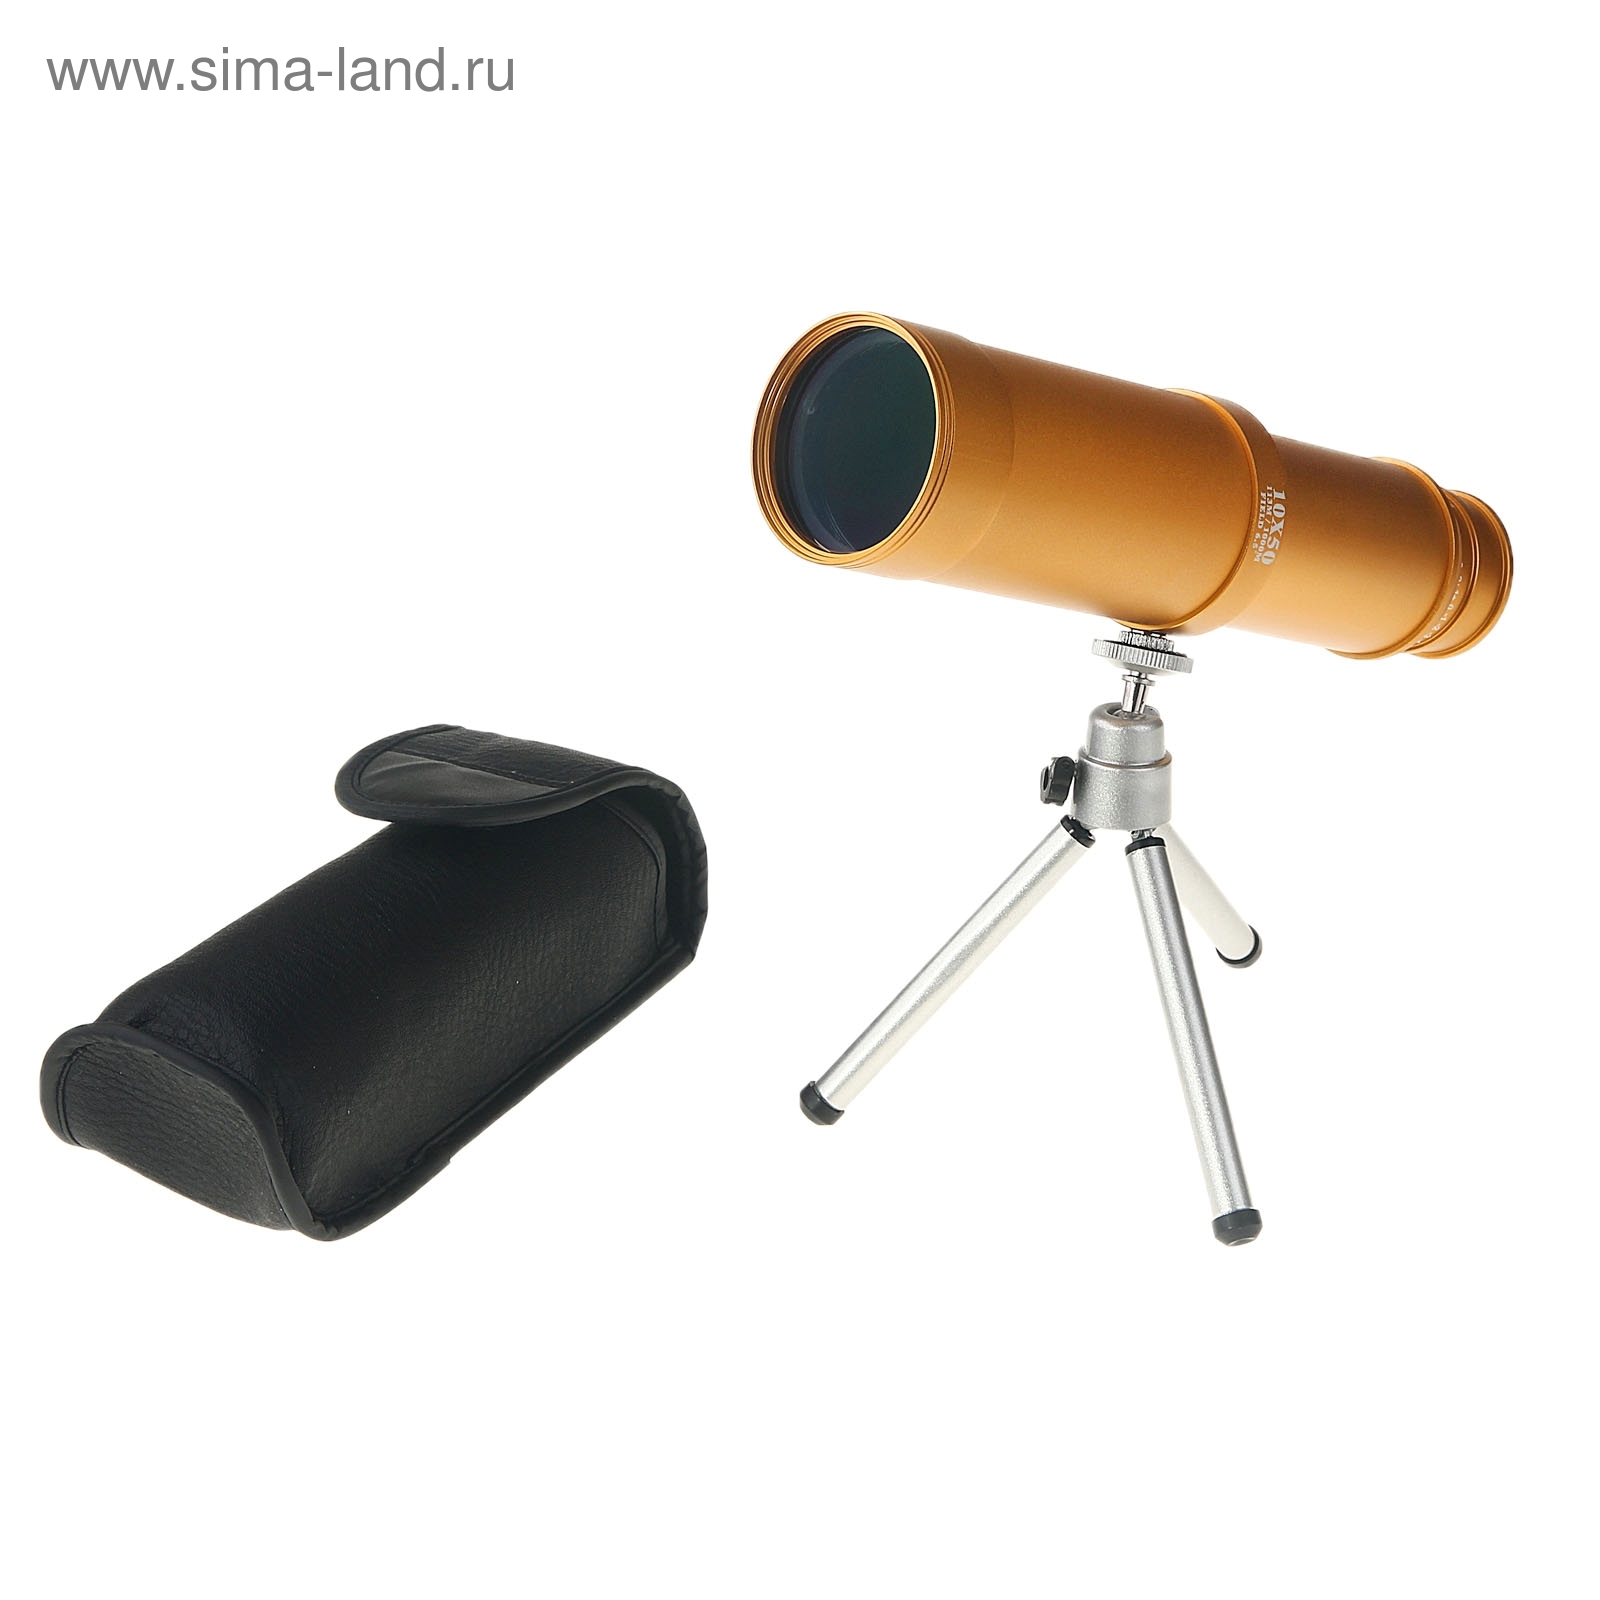 Телескоп настольный "Компакт" 10х50